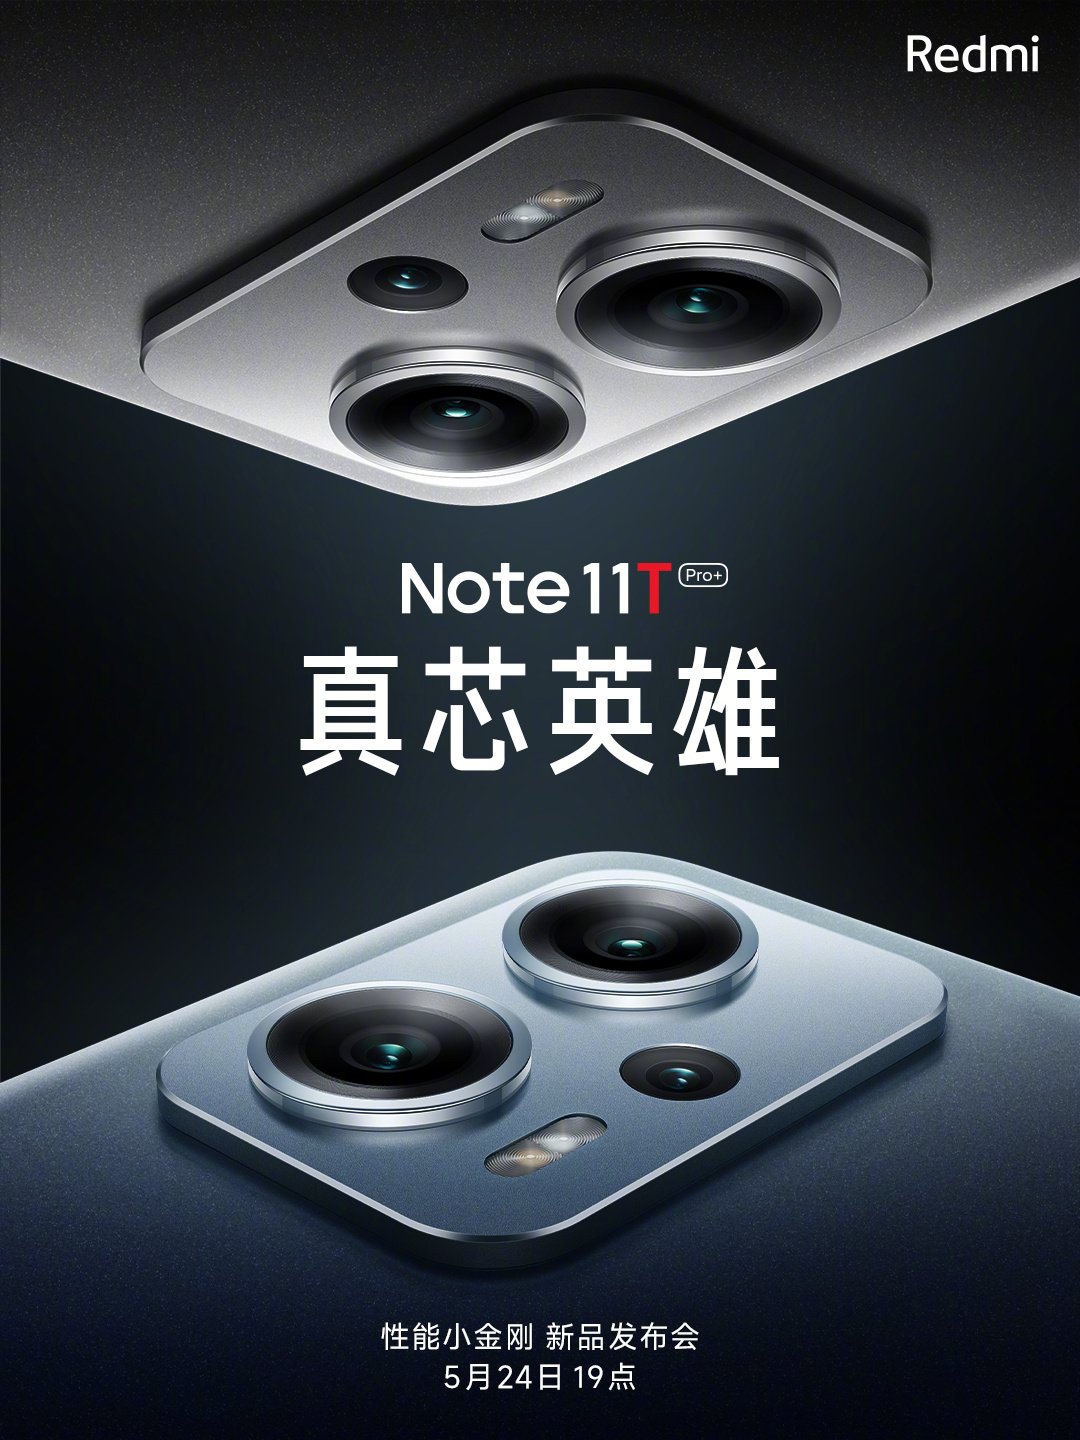 Fecha de lanzamiento de la serie Redmi Note 11T